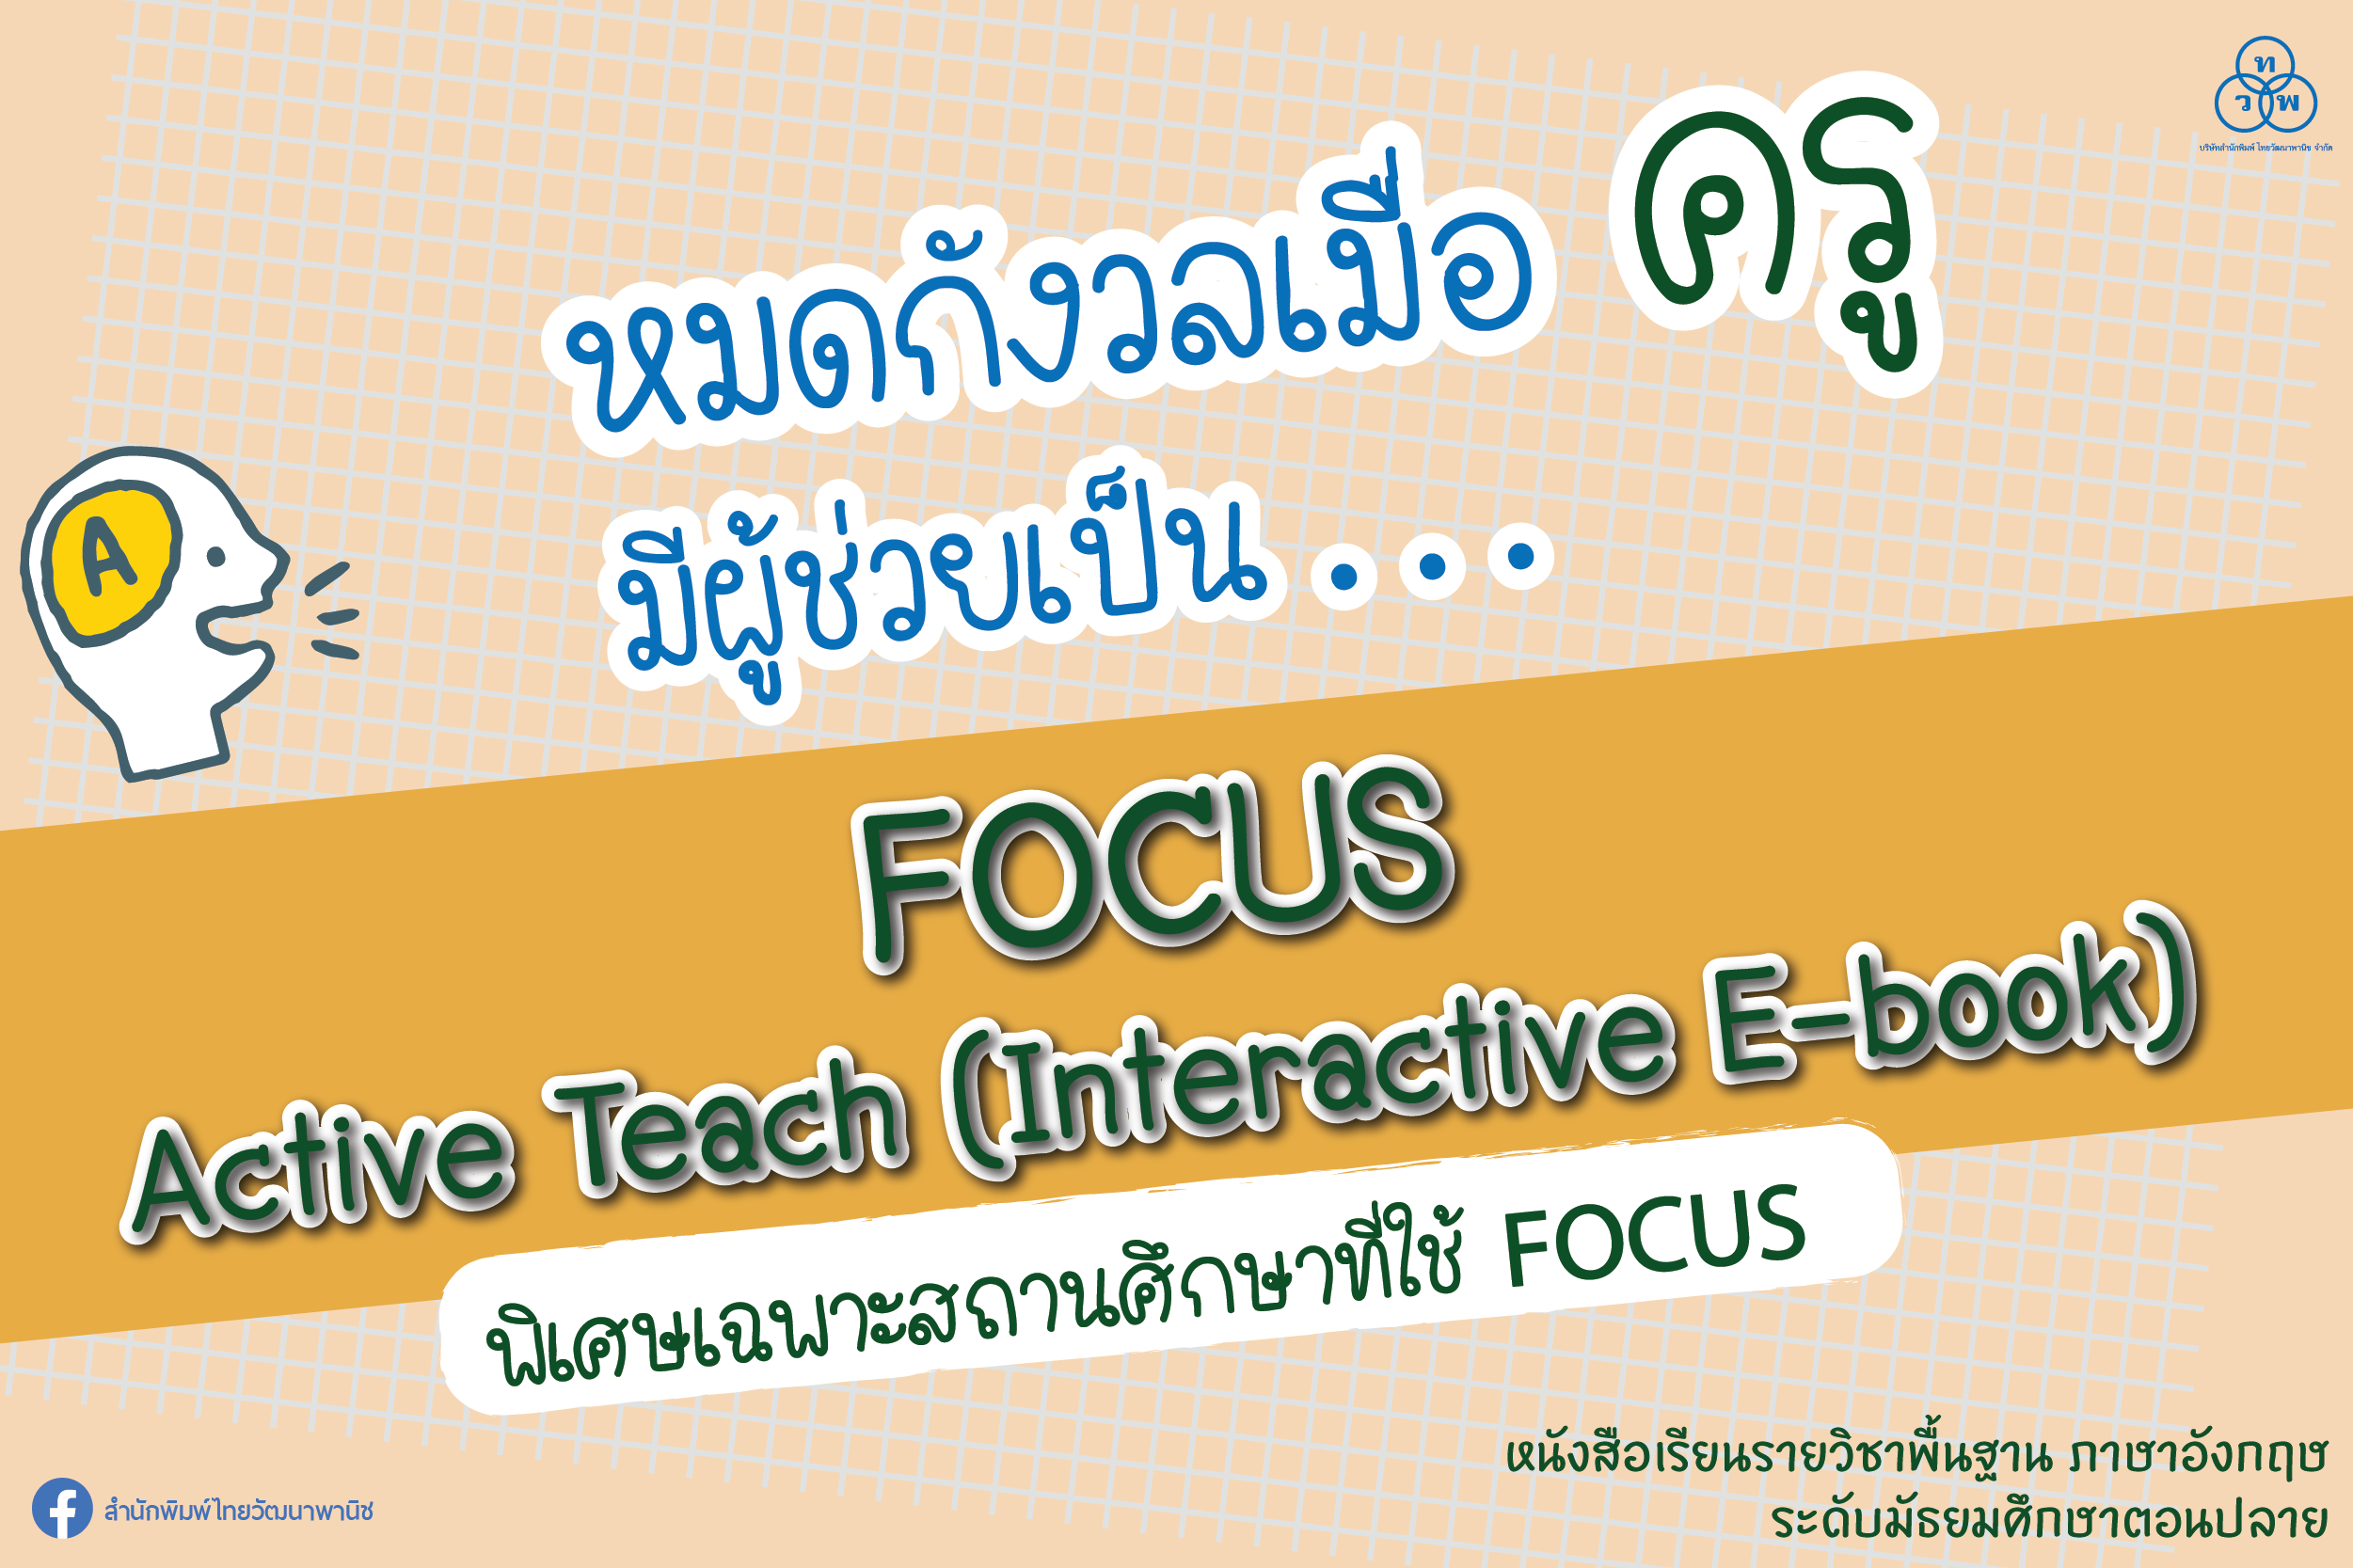 หมดกังวลเมื่อครู มีผู้ช่วยเป็น...FOCUS Active Teach (Interactive E-book)